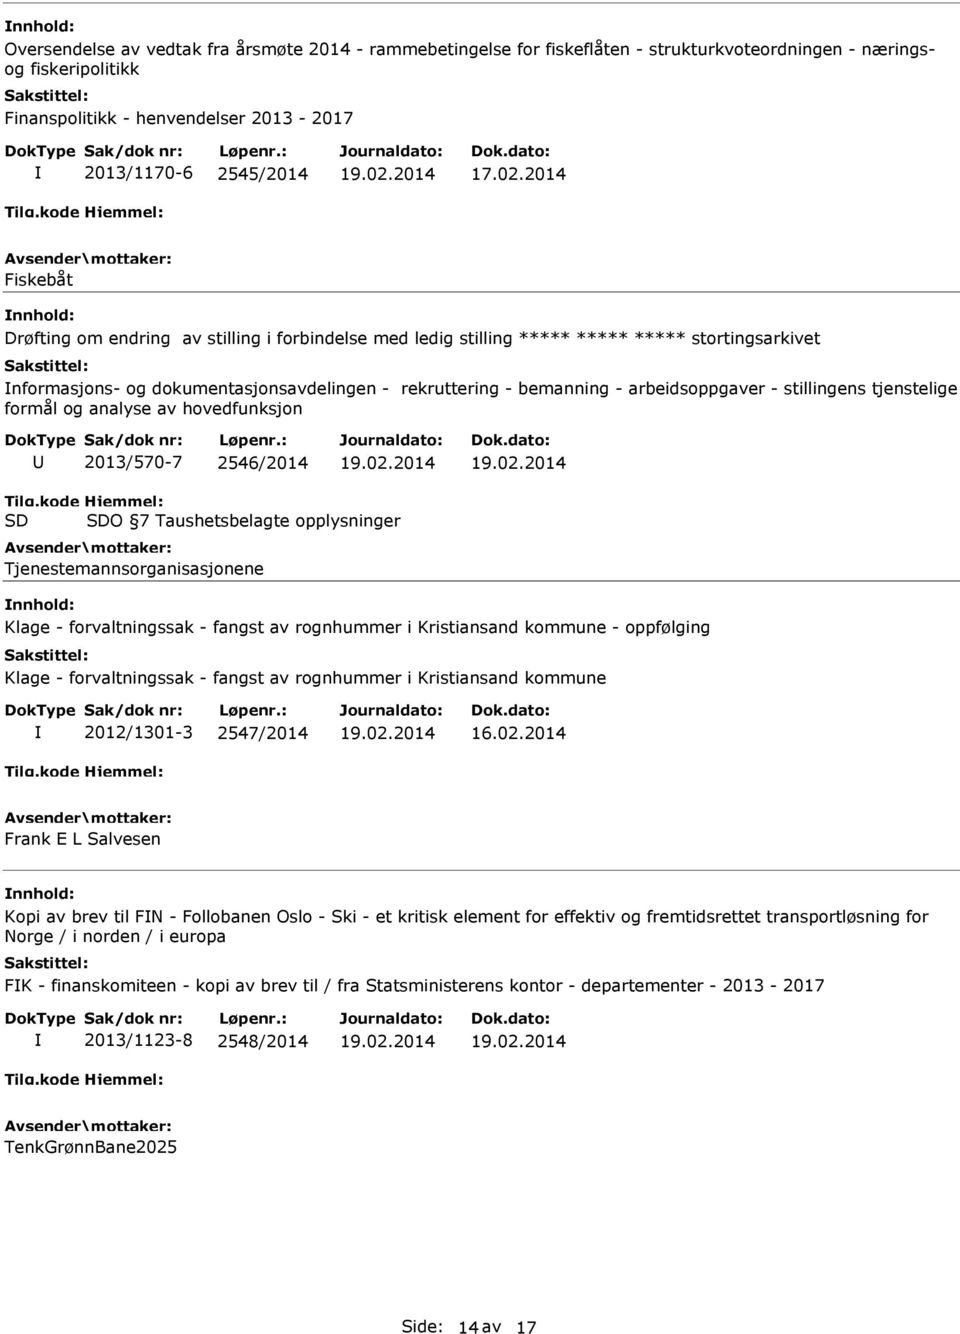 tjenstelige formål og analyse av hovedfunksjon 2013/570-7 2546/2014 SD SDO 7 Taushetsbelagte opplysninger Tjenestemannsorganisasjonene Klage - forvaltningssak - fangst av rognhummer i Kristiansand